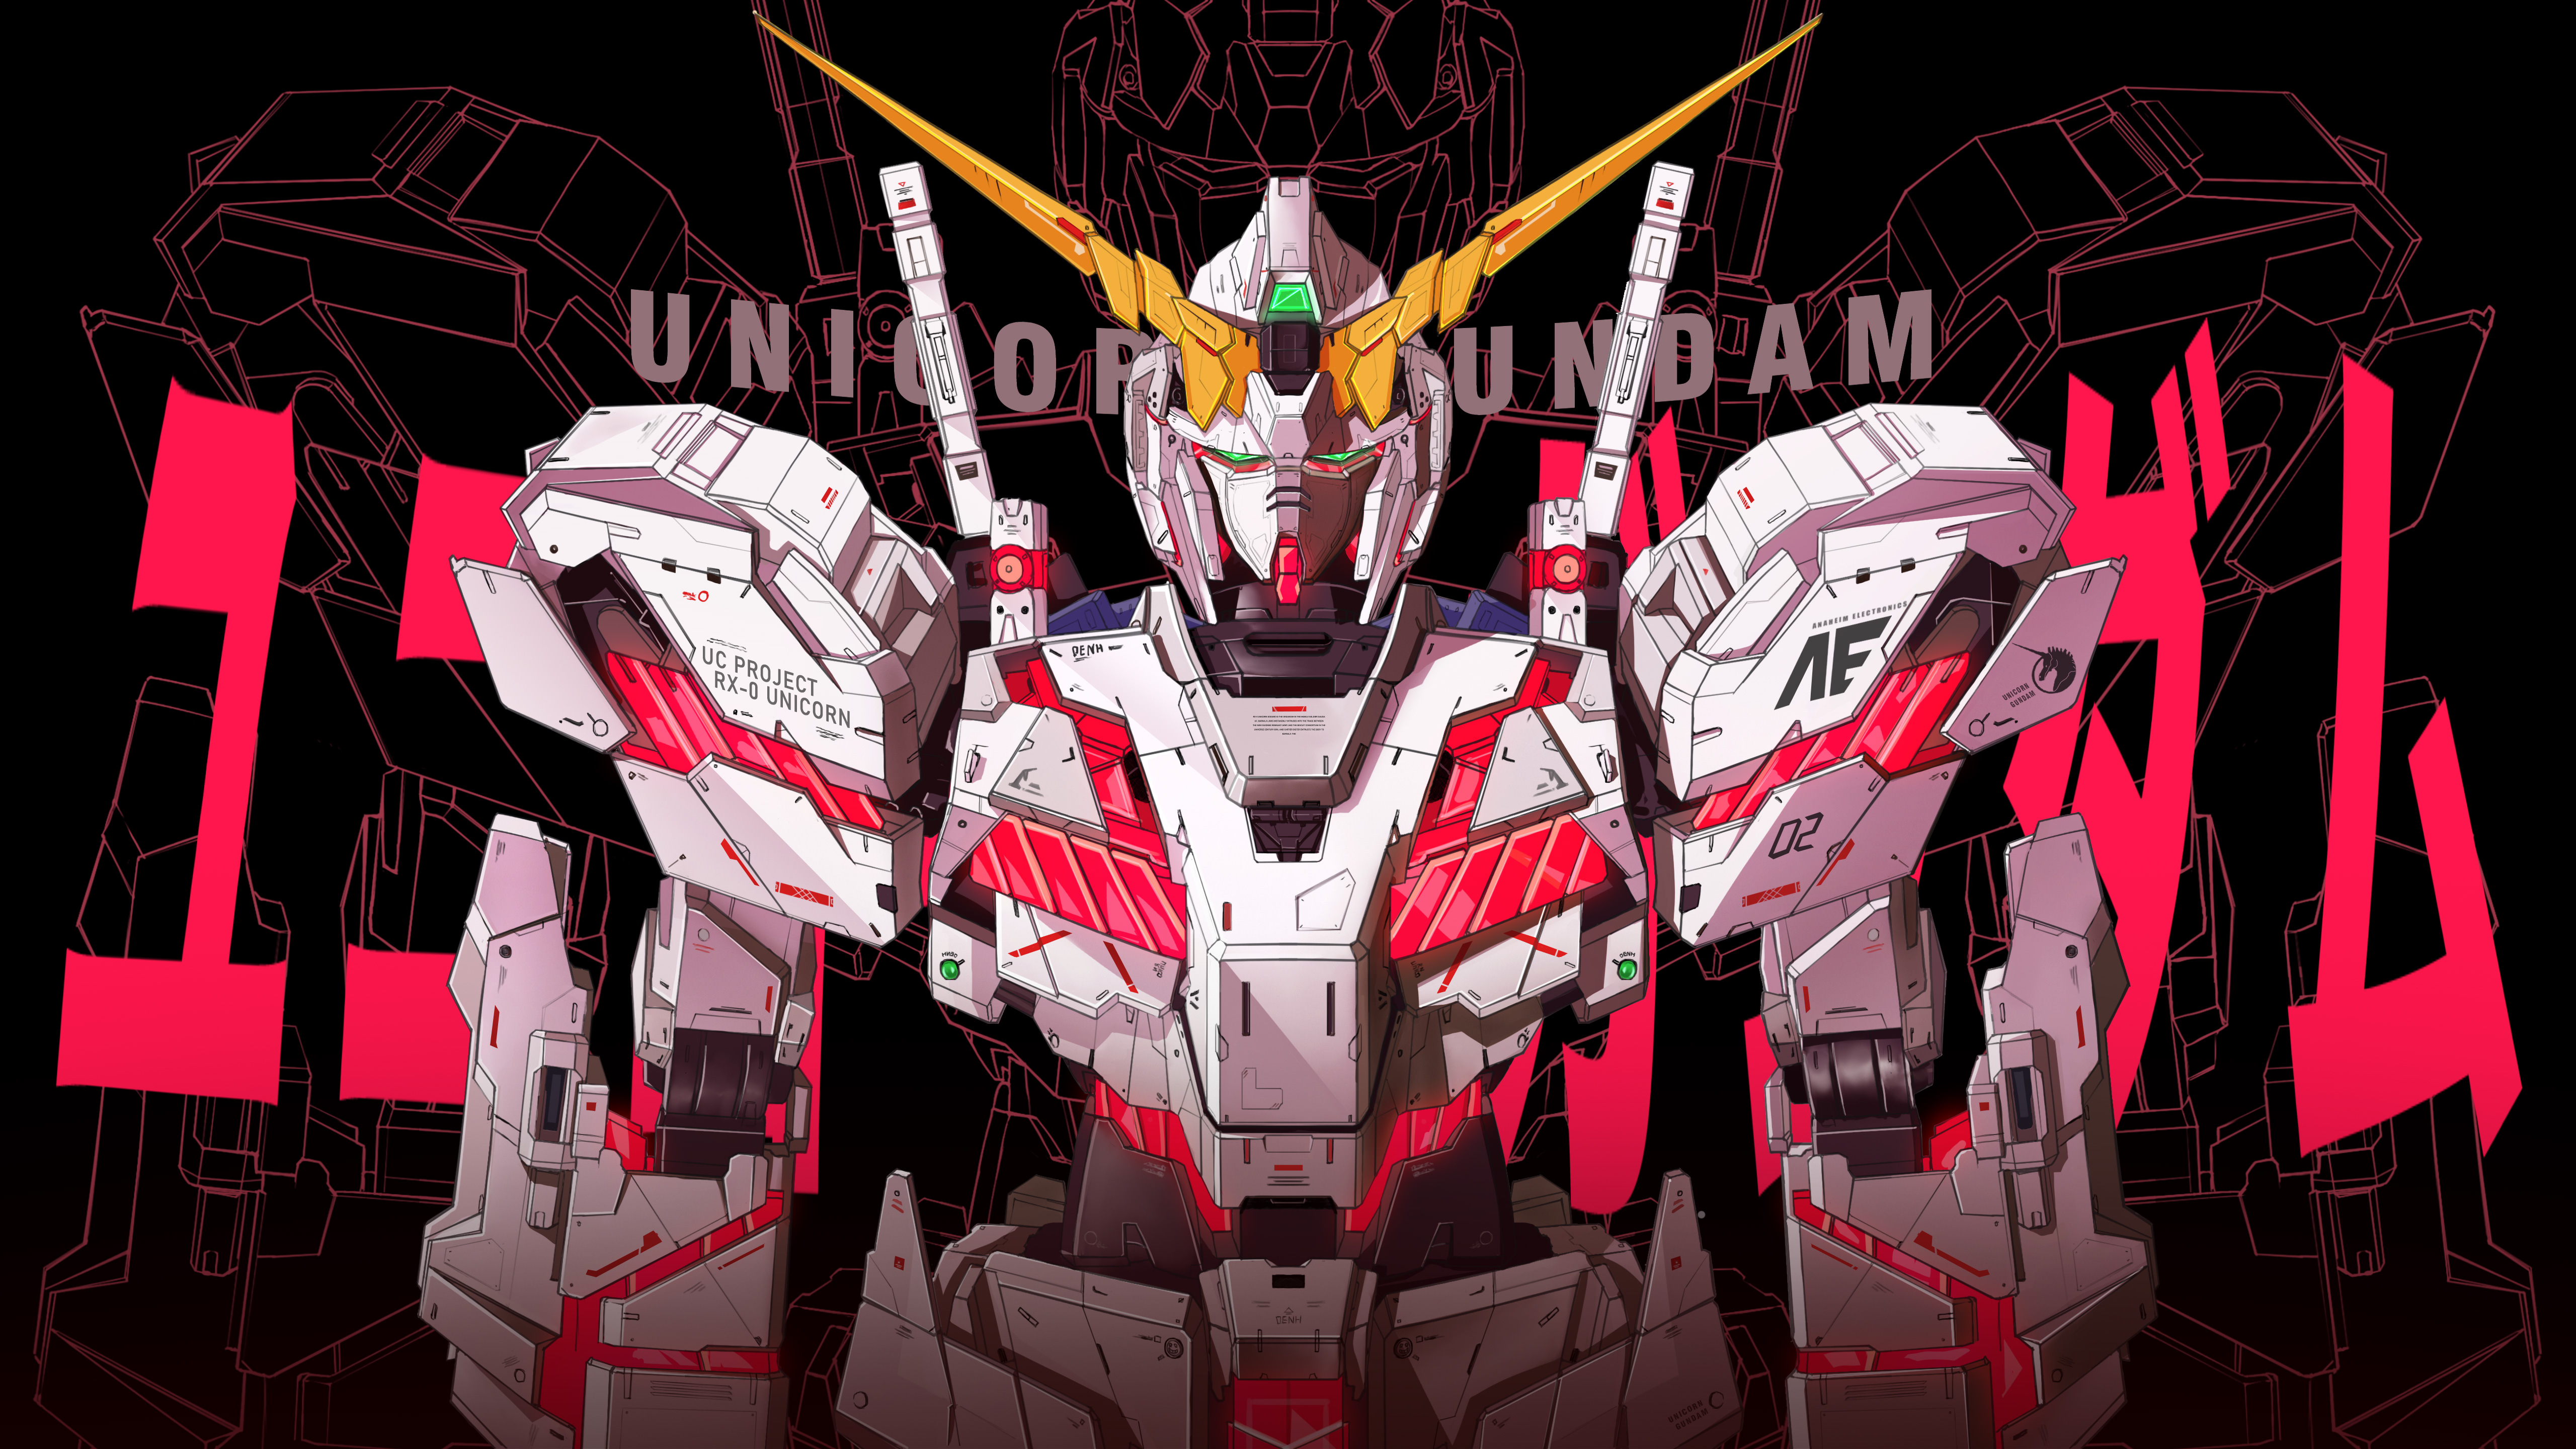 Hình nền Gundam Unicorn 4K: Với hình nền Gundam Unicorn 4K, bạn sẽ được chiêm ngưỡng thiết kế tuyệt đẹp của siêu xe nổi tiếng này với độ phân giải cao nhất. Hãy hình dung bạn có thể nhìn thấy từng chi tiết chân thật của Gundam Unicorn trên màn hình của mình. Chắc chắn, hình ảnh đẹp đến nao lòng sẽ khiến bạn phấn khích và muốn sở hữu ngay!